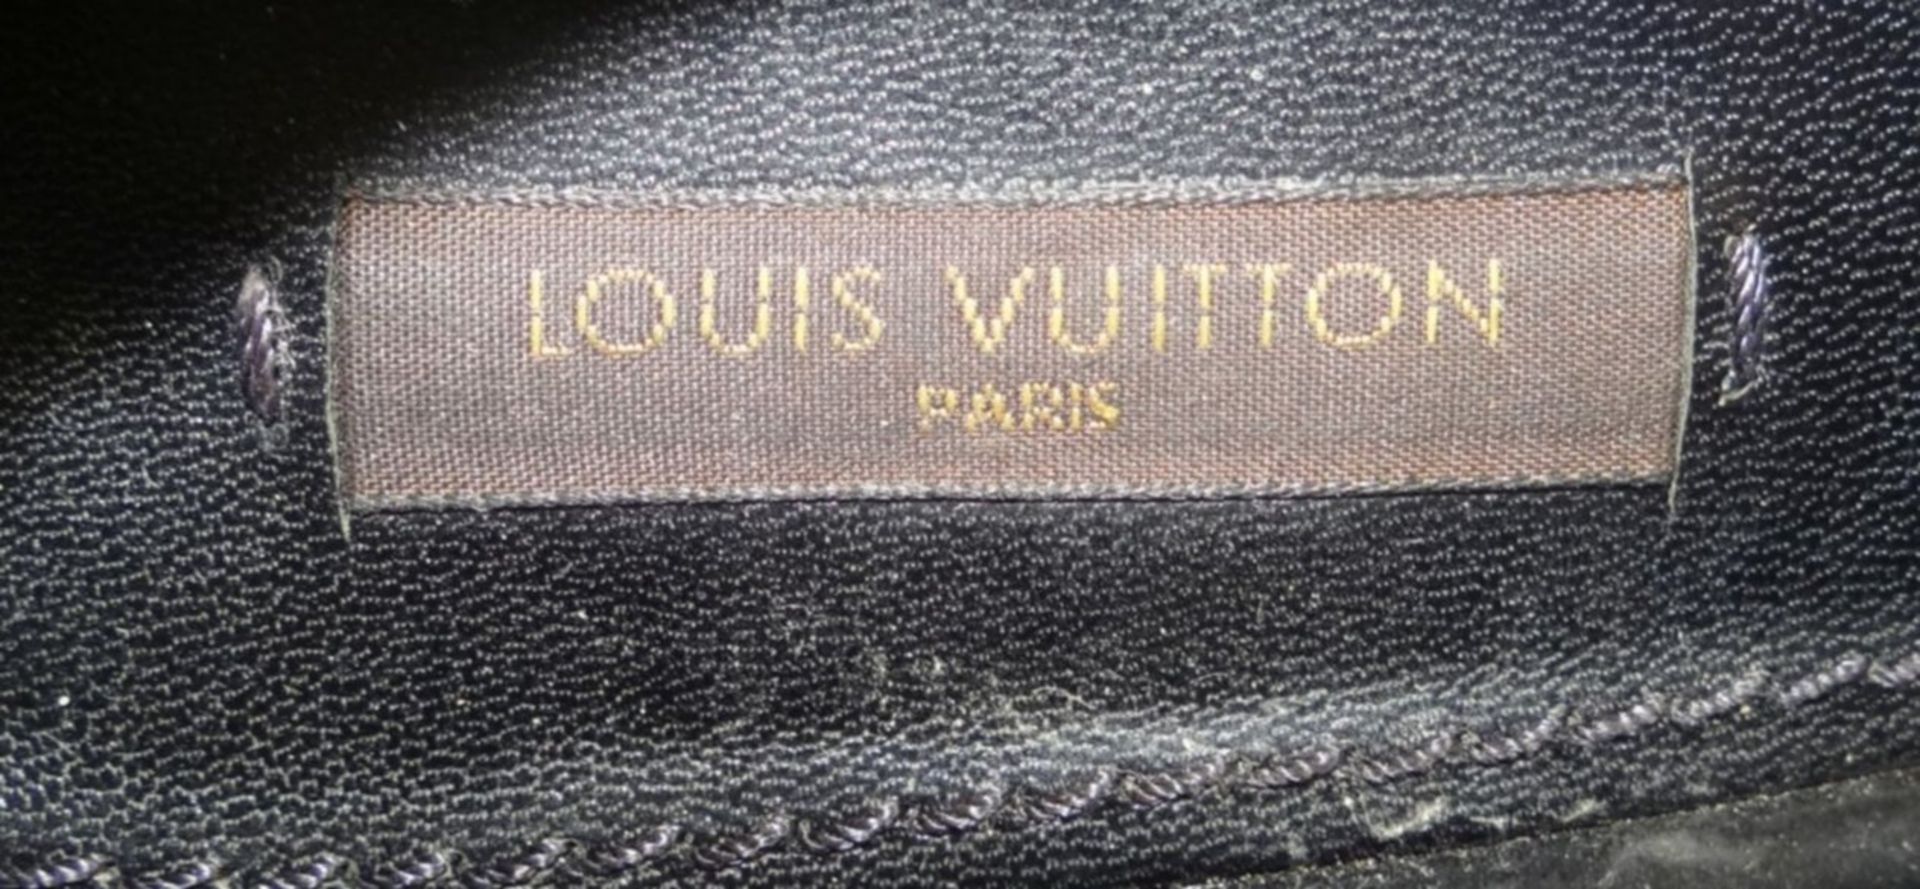 Paar Pumps "Louis Vuitton" in orig. Karton, 38 1/2, gut erhalten mit leichten Tragespuren, Kalb - Bild 6 aus 9